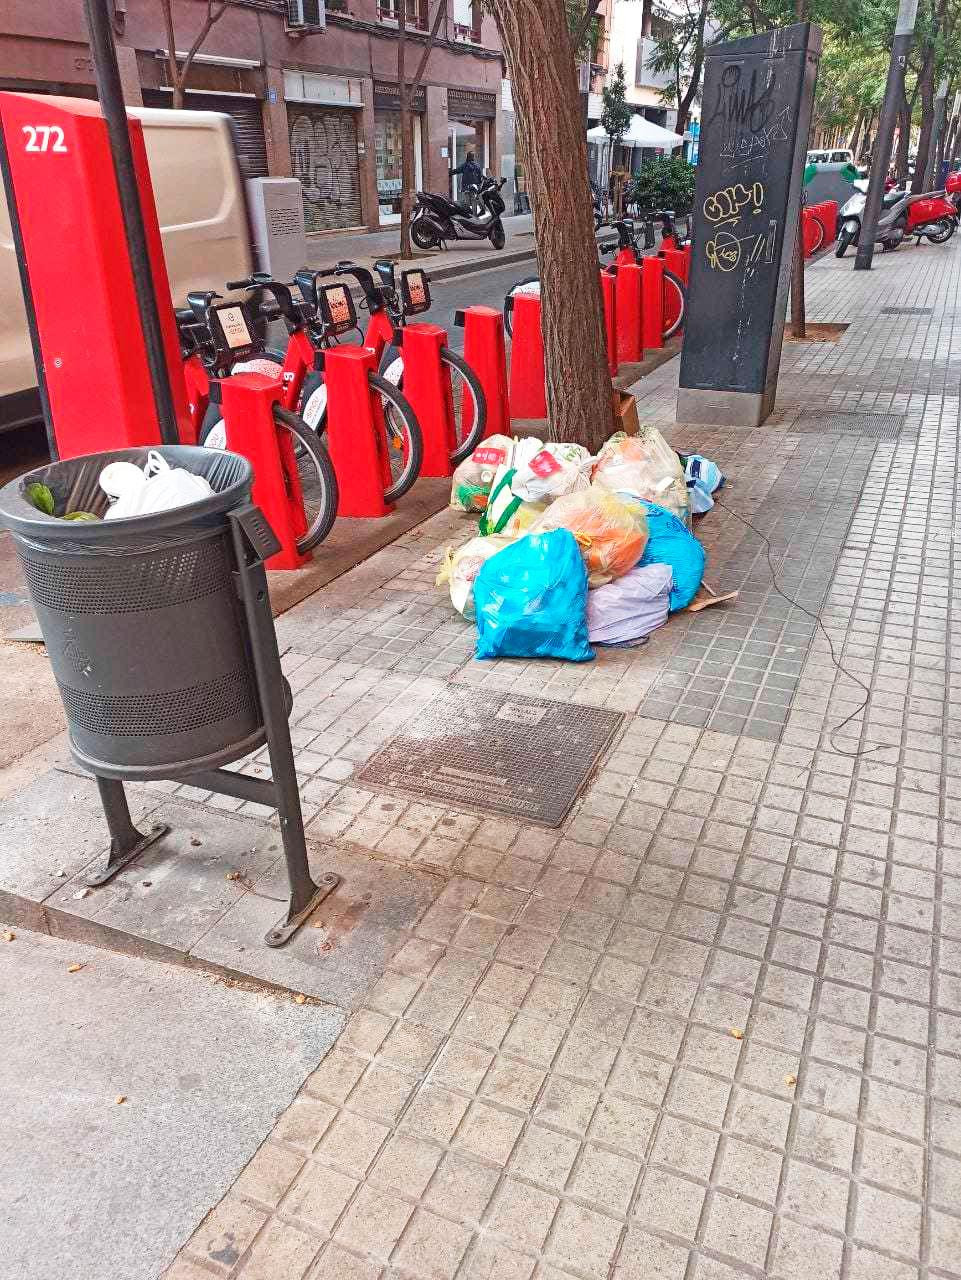 Basura en las calles de Sant Andreu tras la introducción de la recogida puerta a puerta / CG